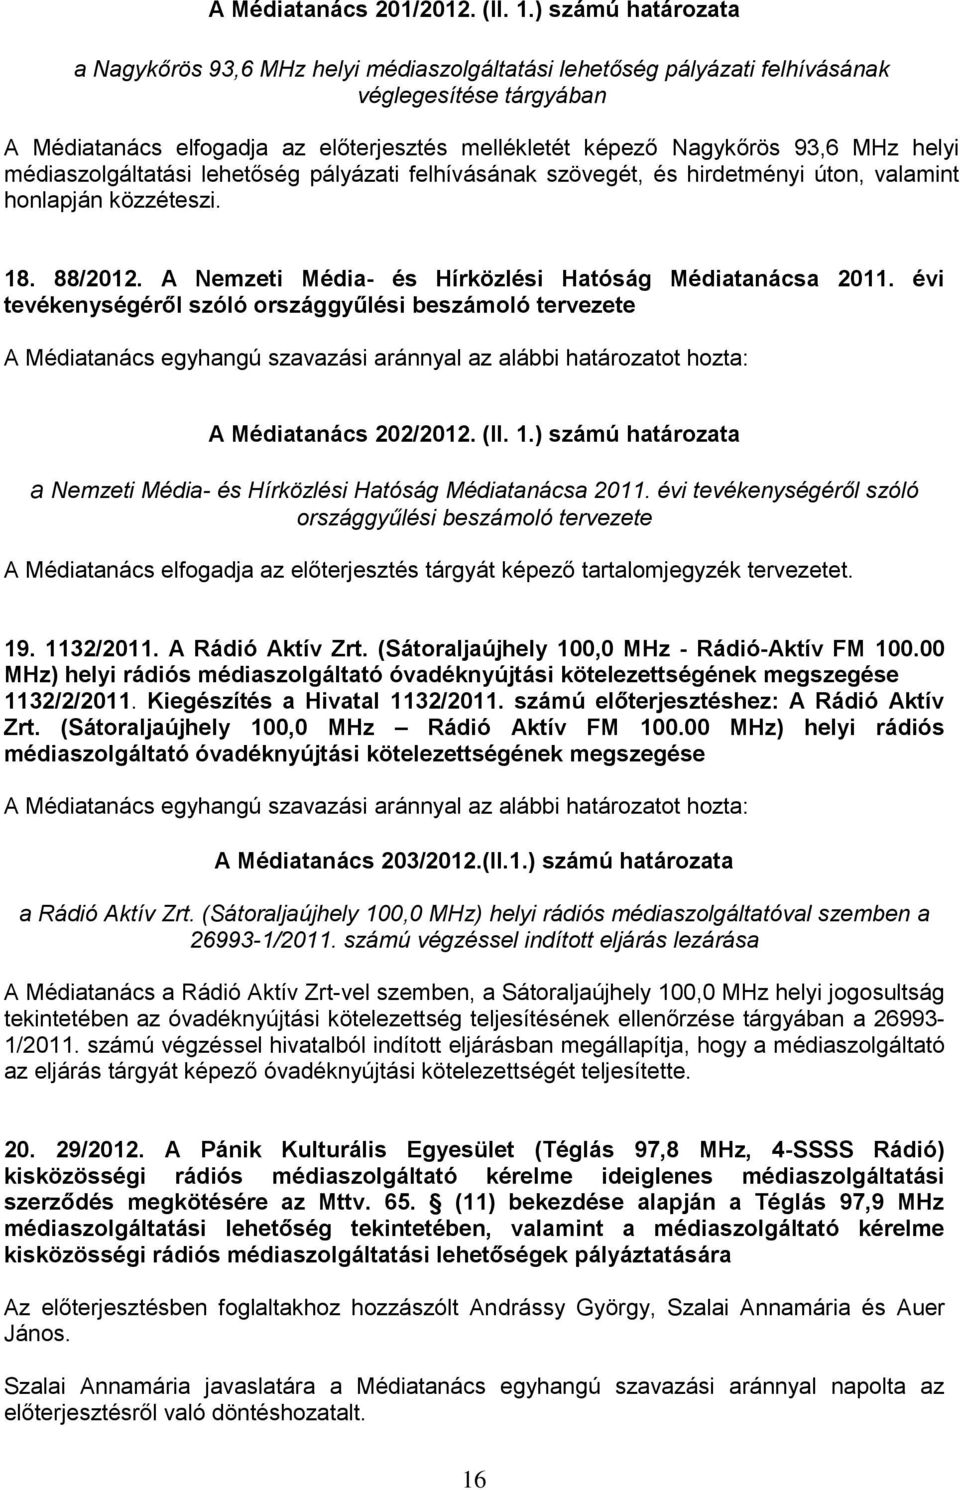 MHz helyi médiaszolgáltatási lehetőség pályázati felhívásának szövegét, és hirdetményi úton, valamint honlapján közzéteszi. 18. 88/2012. A Nemzeti Média- és Hírközlési Hatóság Médiatanácsa 2011.